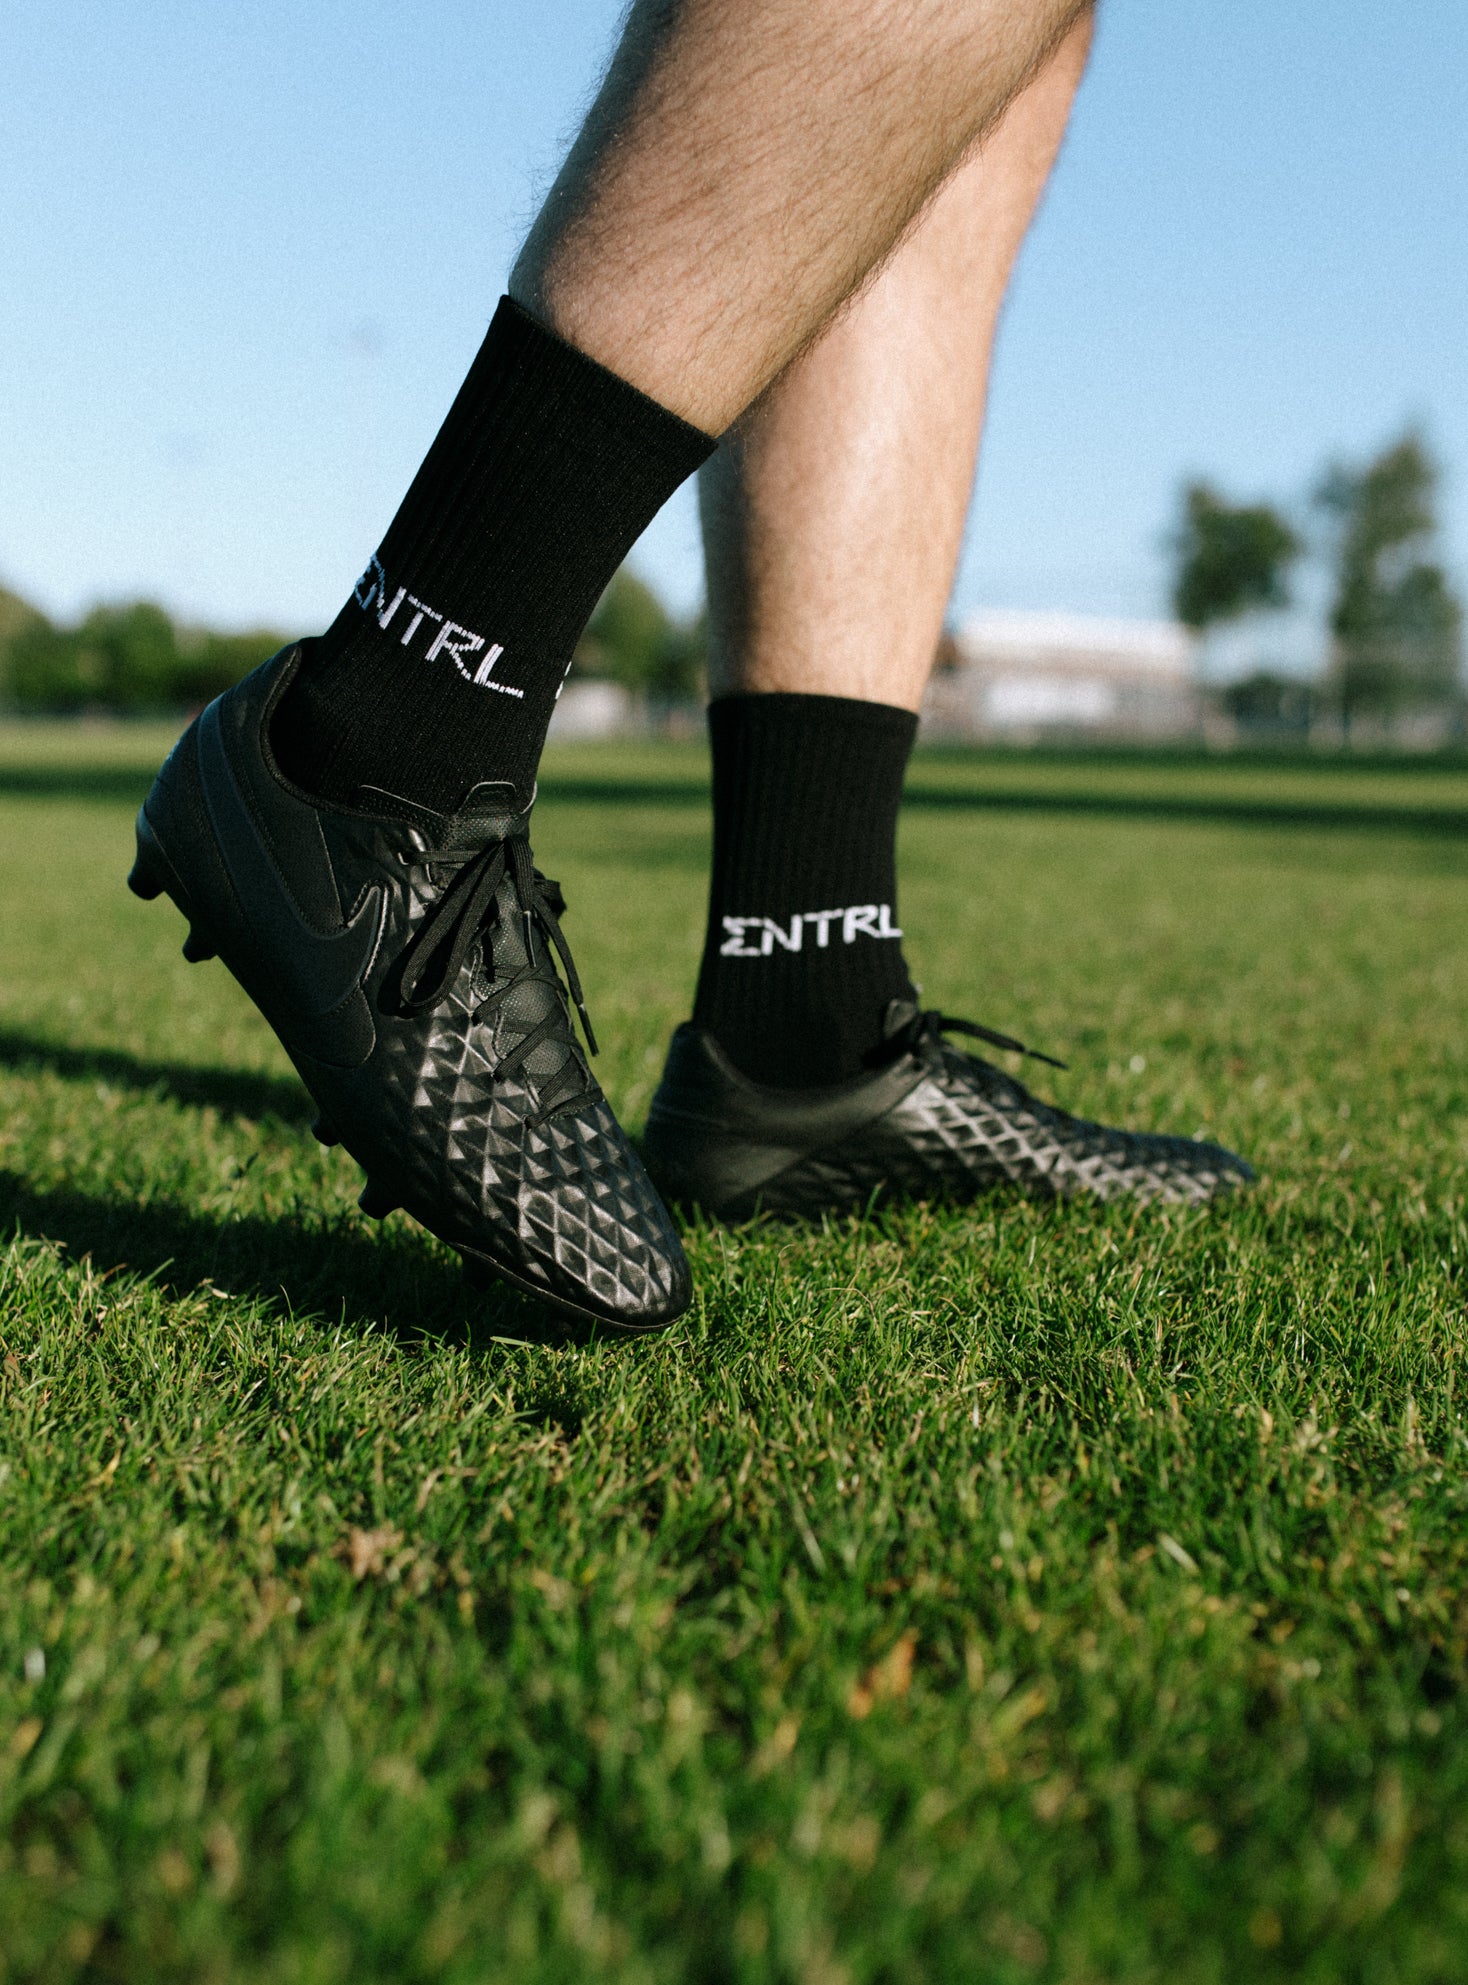 CNTRL Socks 2.0 - Black